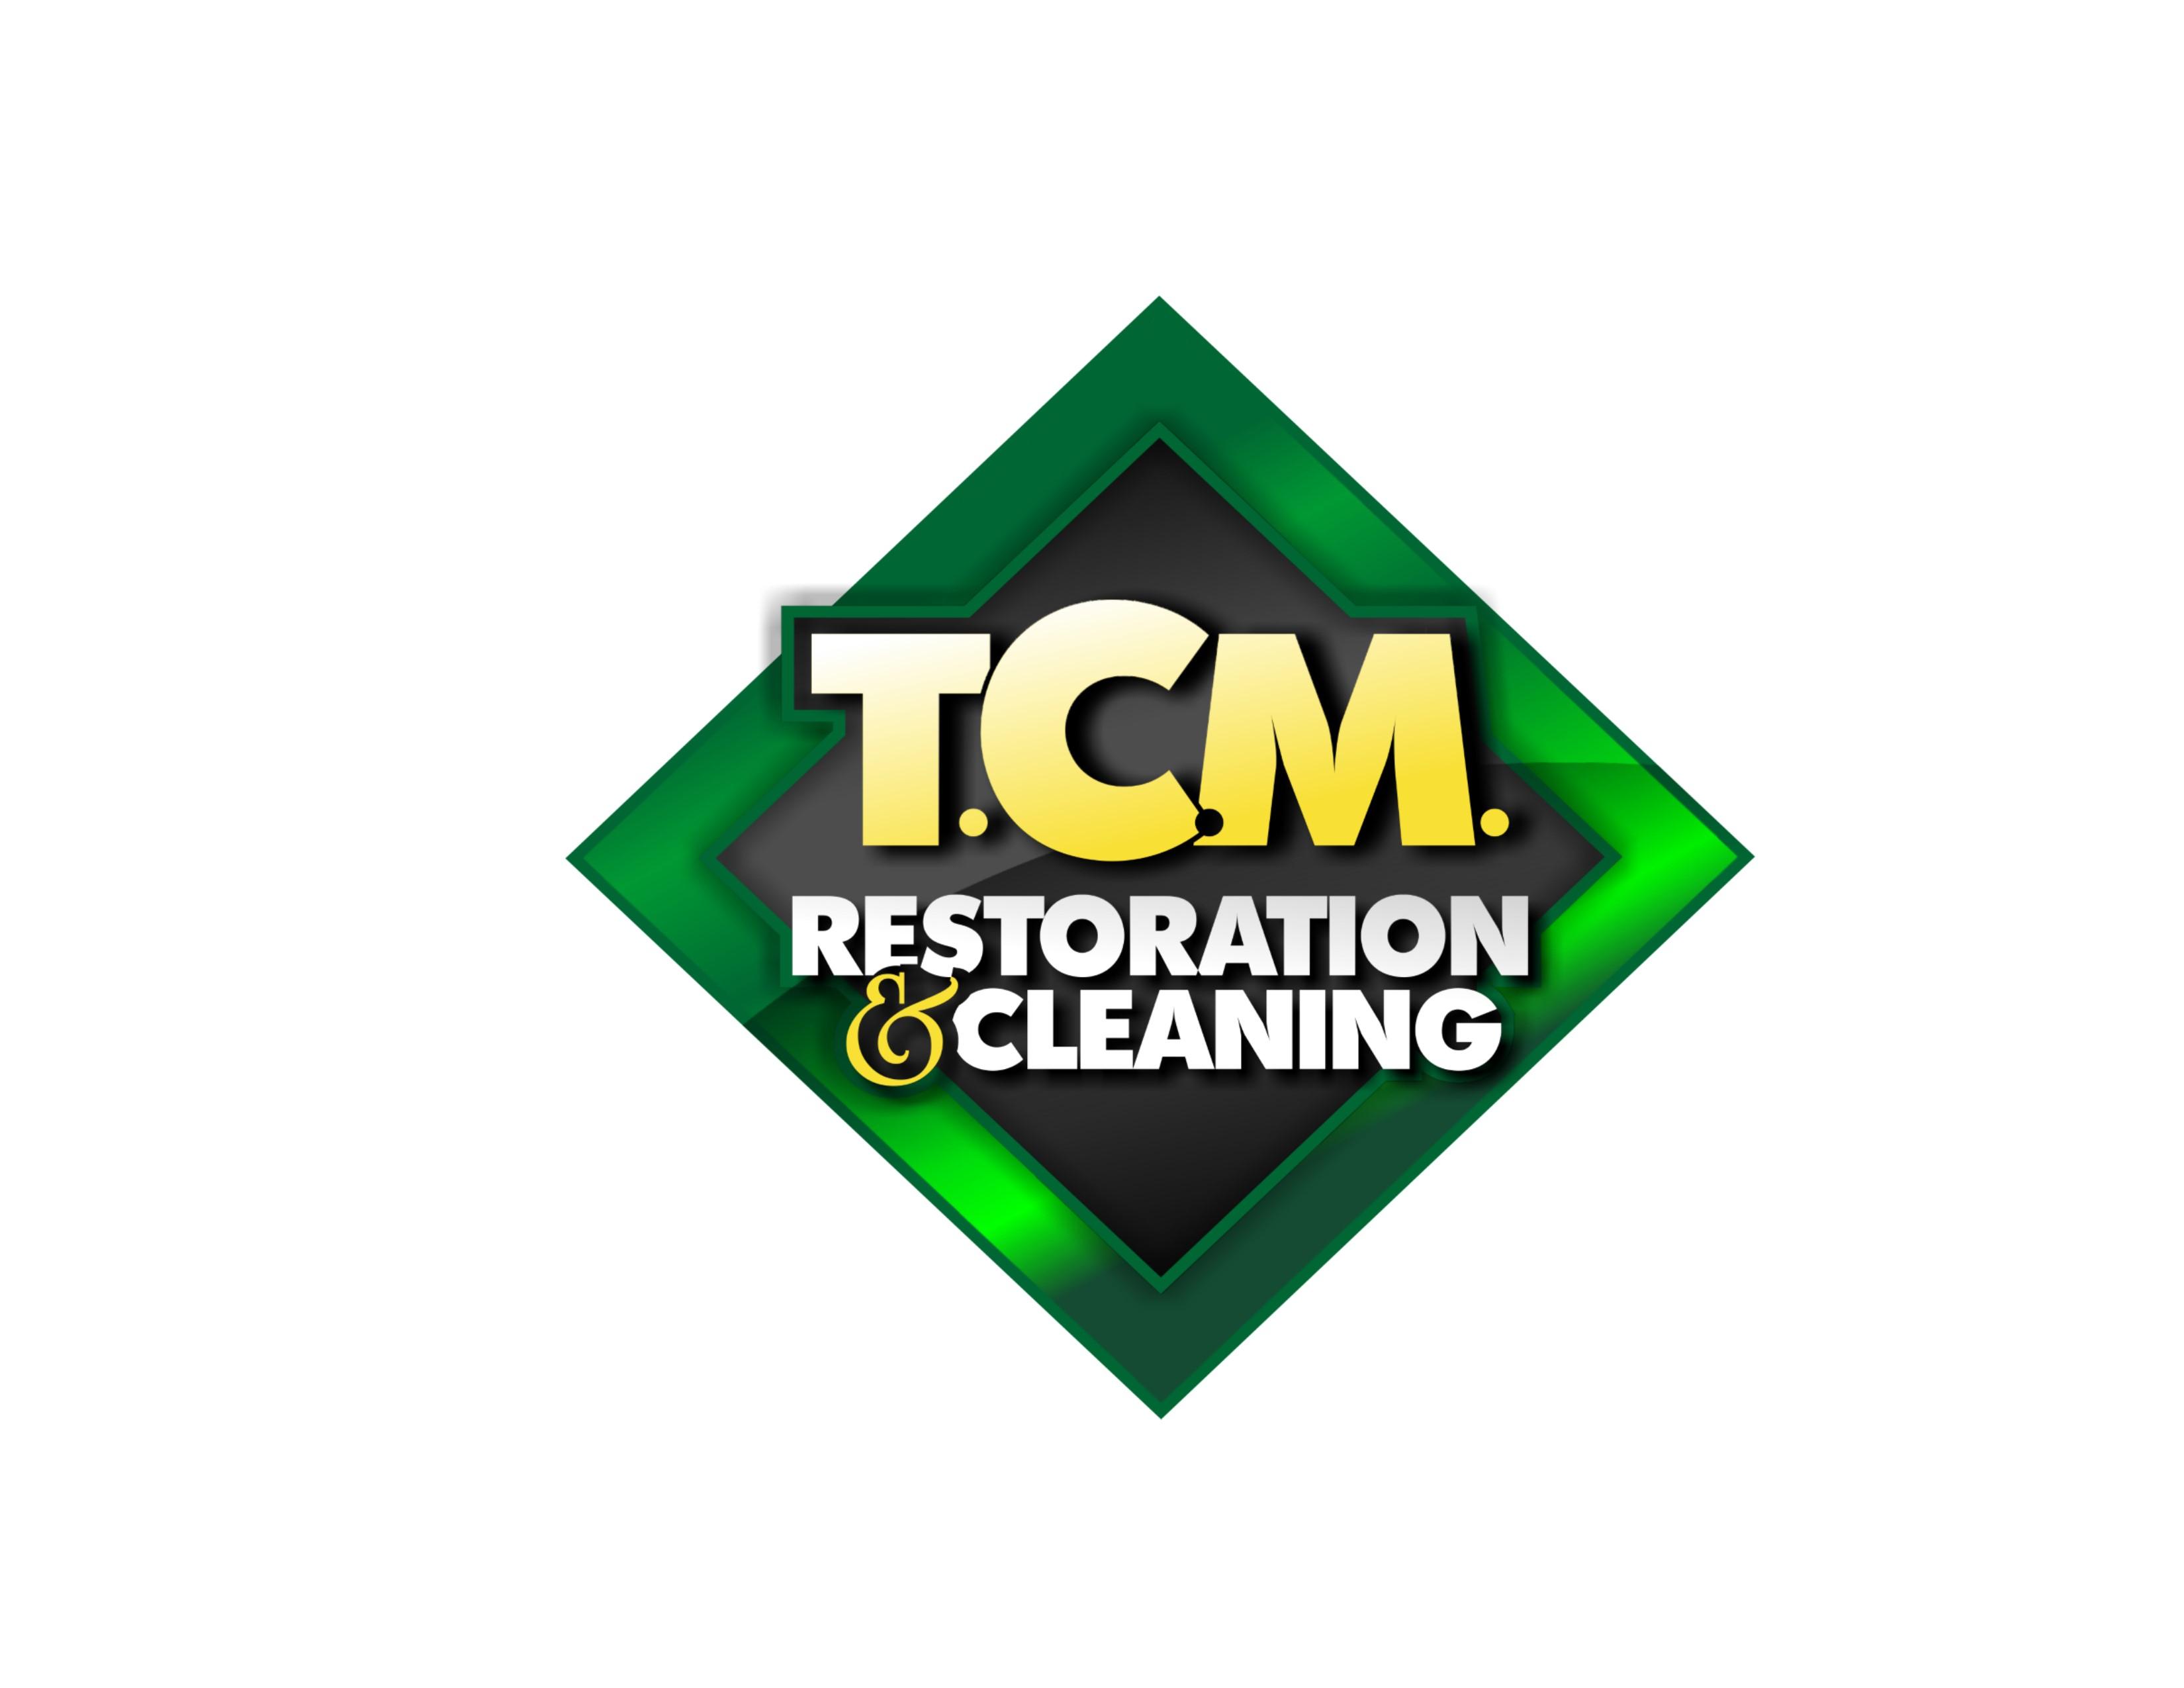 TCM Logo - TCM Logo Wasilla Chamber of Commerce